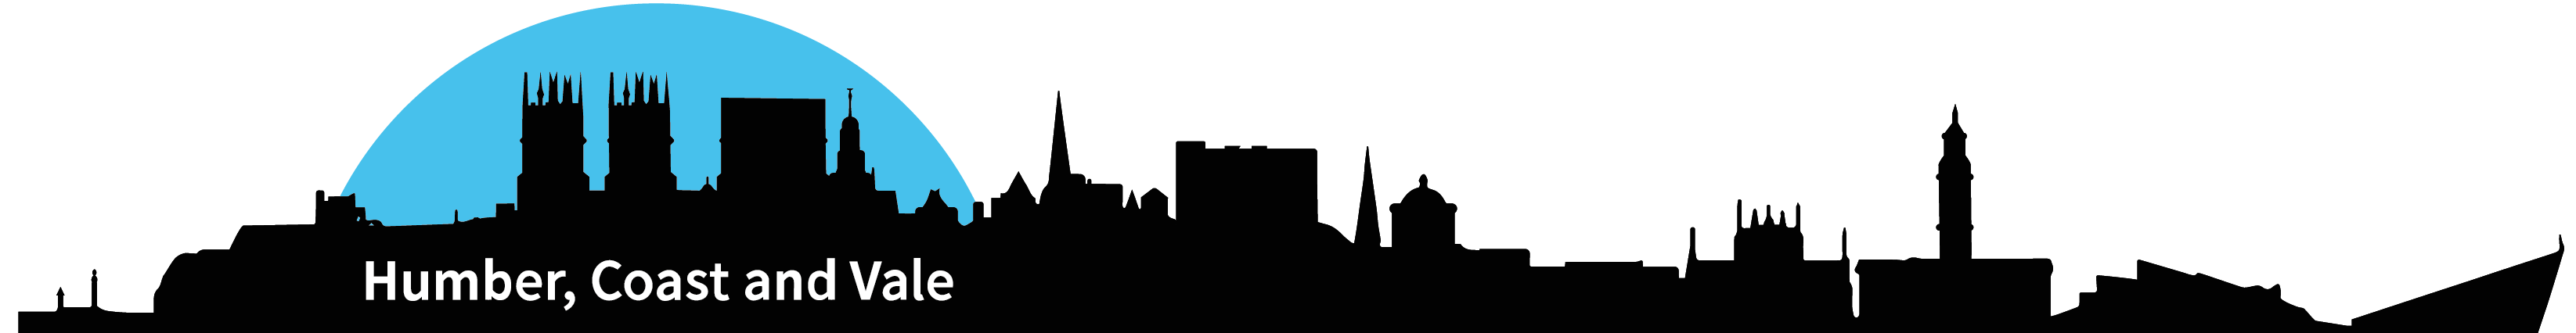 HCV-Primary-logo